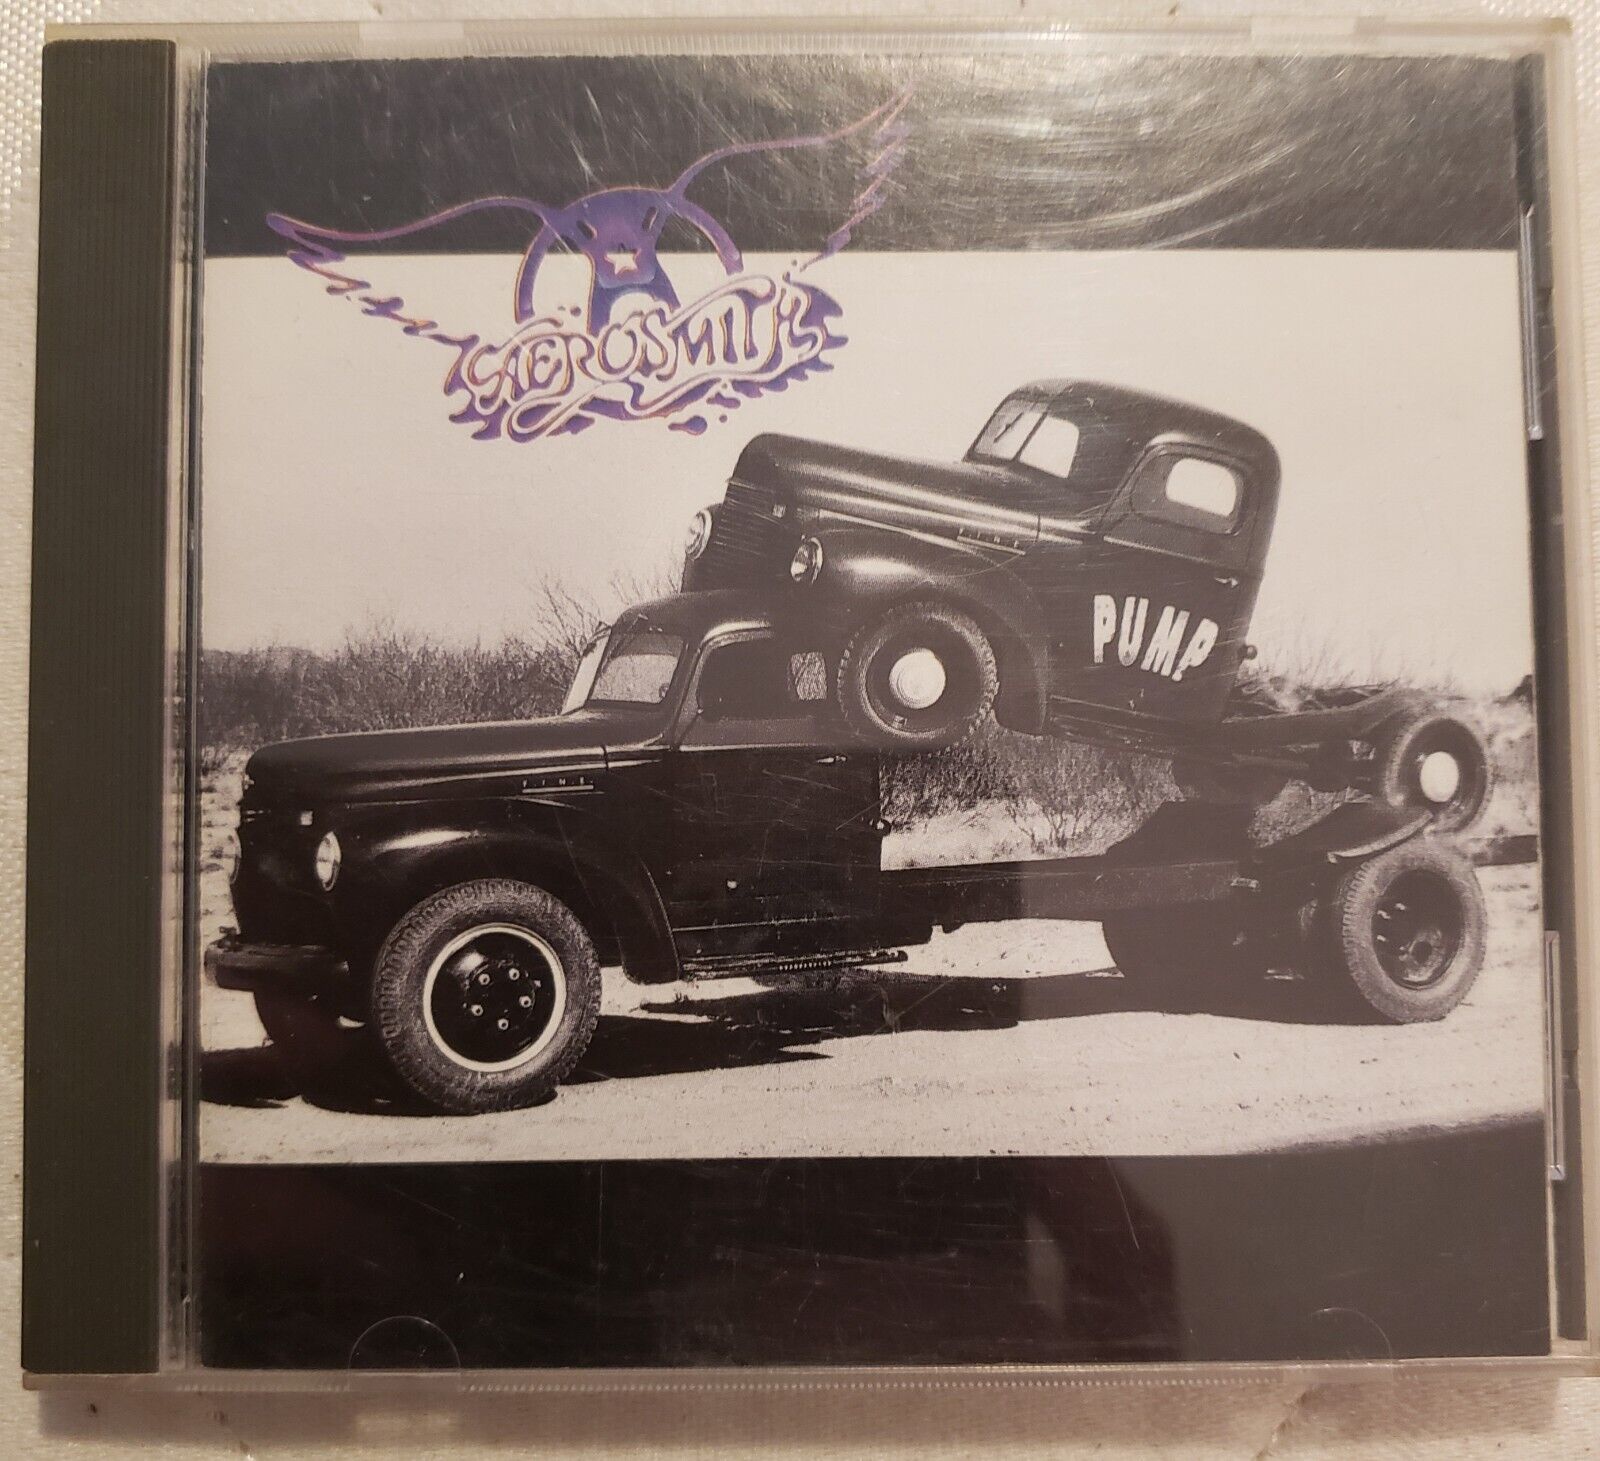 Vintage Aerosmith Pump CD 1989 Geffen